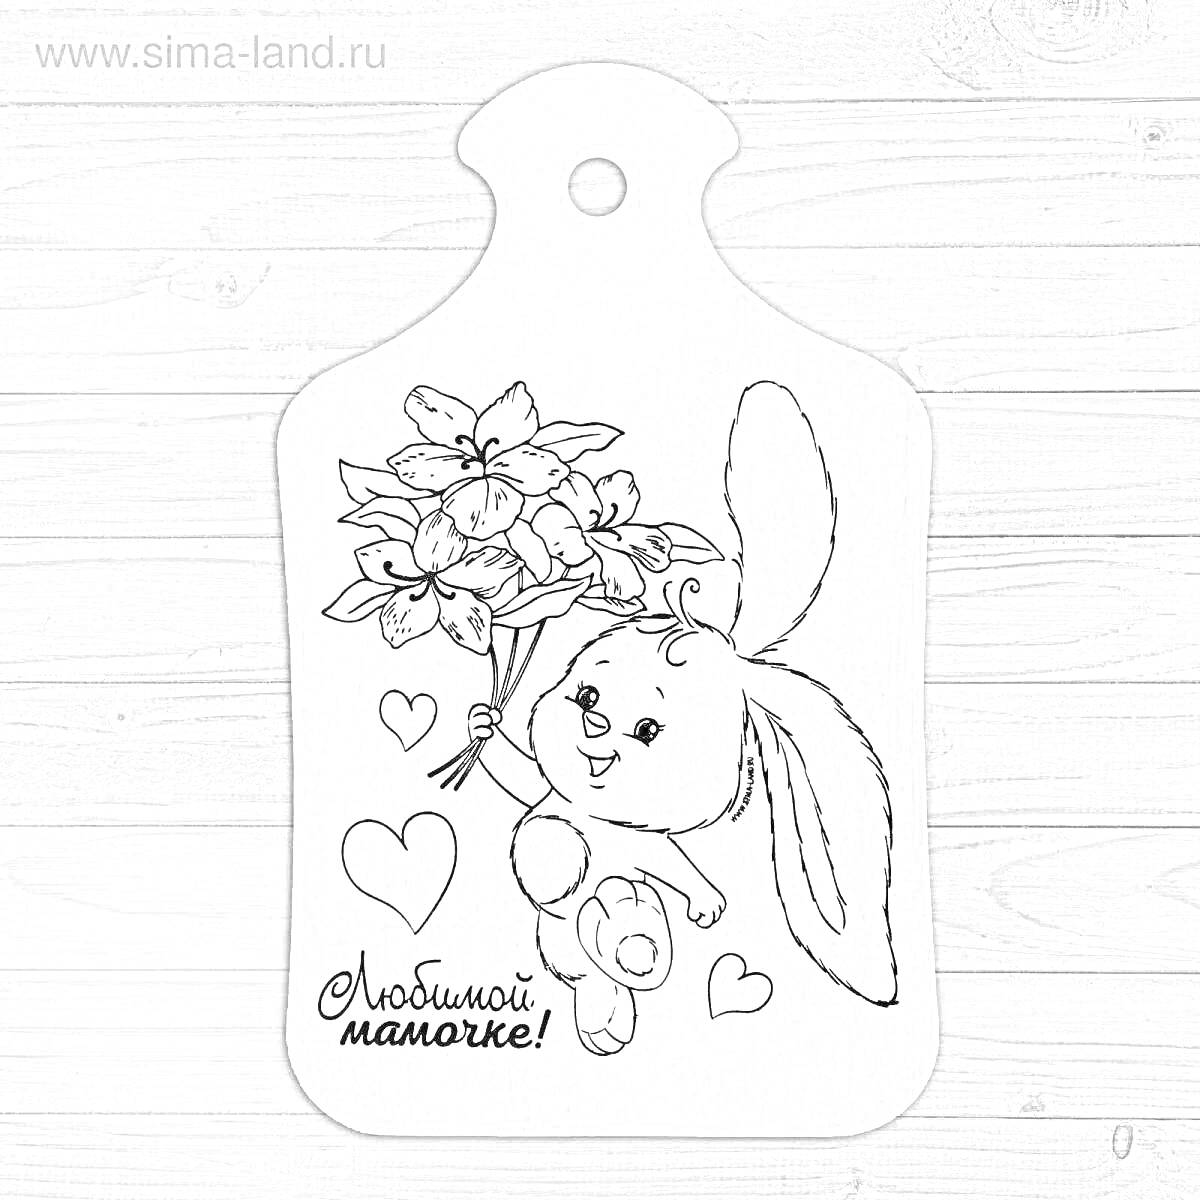 Раскраска разделочная доска с зайцем, букетом цветов, сердечками и надписью 